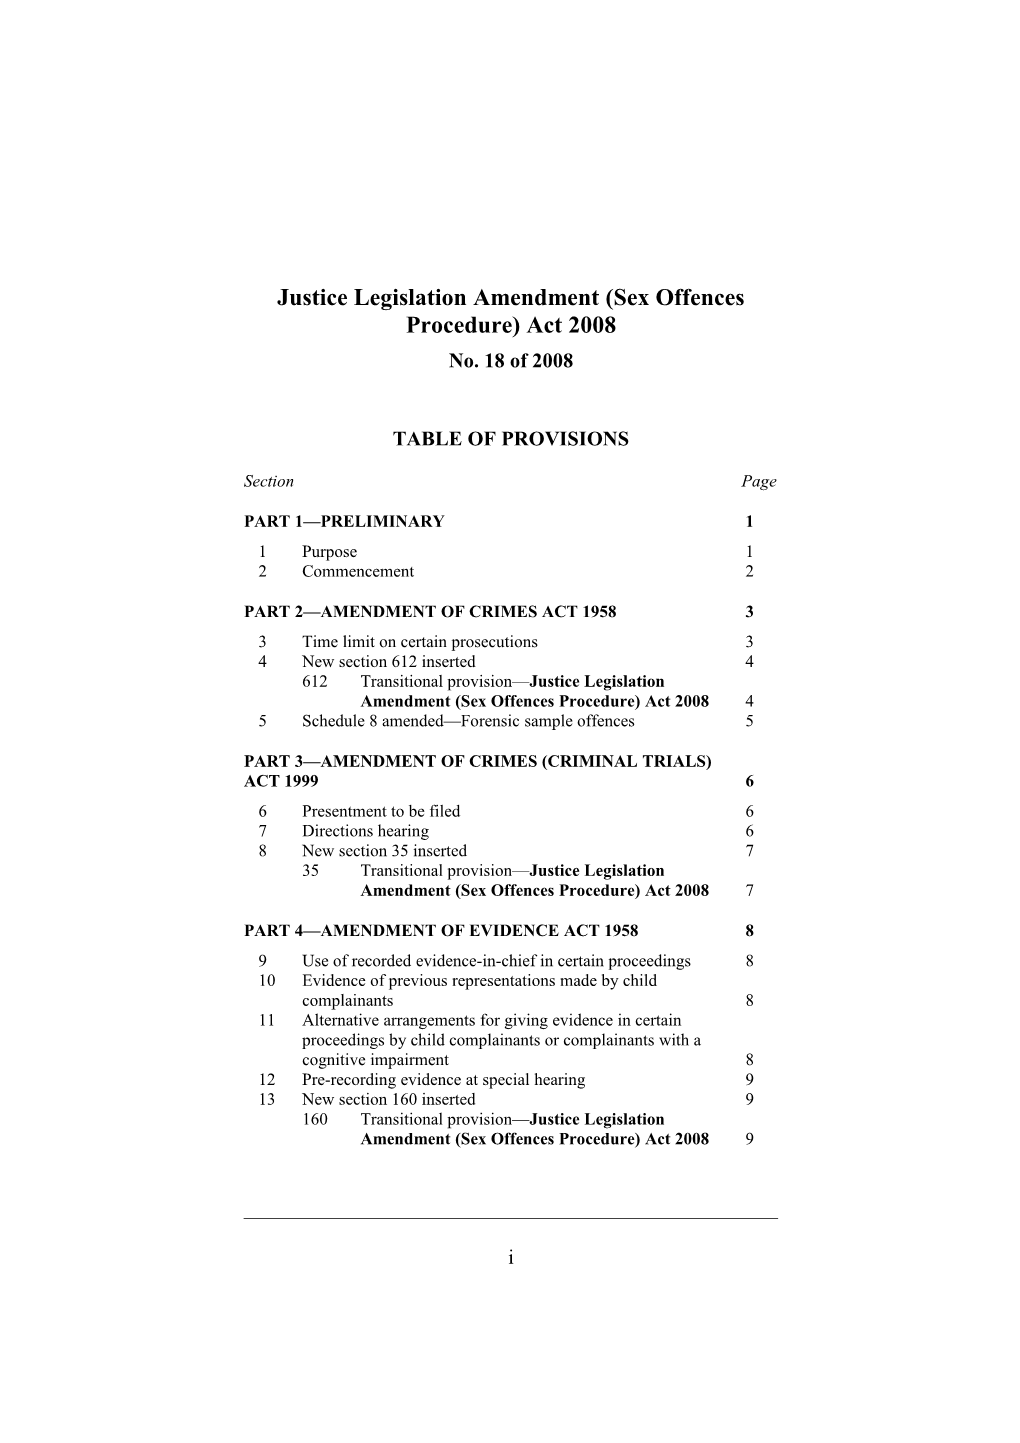 Justice Legislation Amendment (Sex Offences Procedure) Act 2008